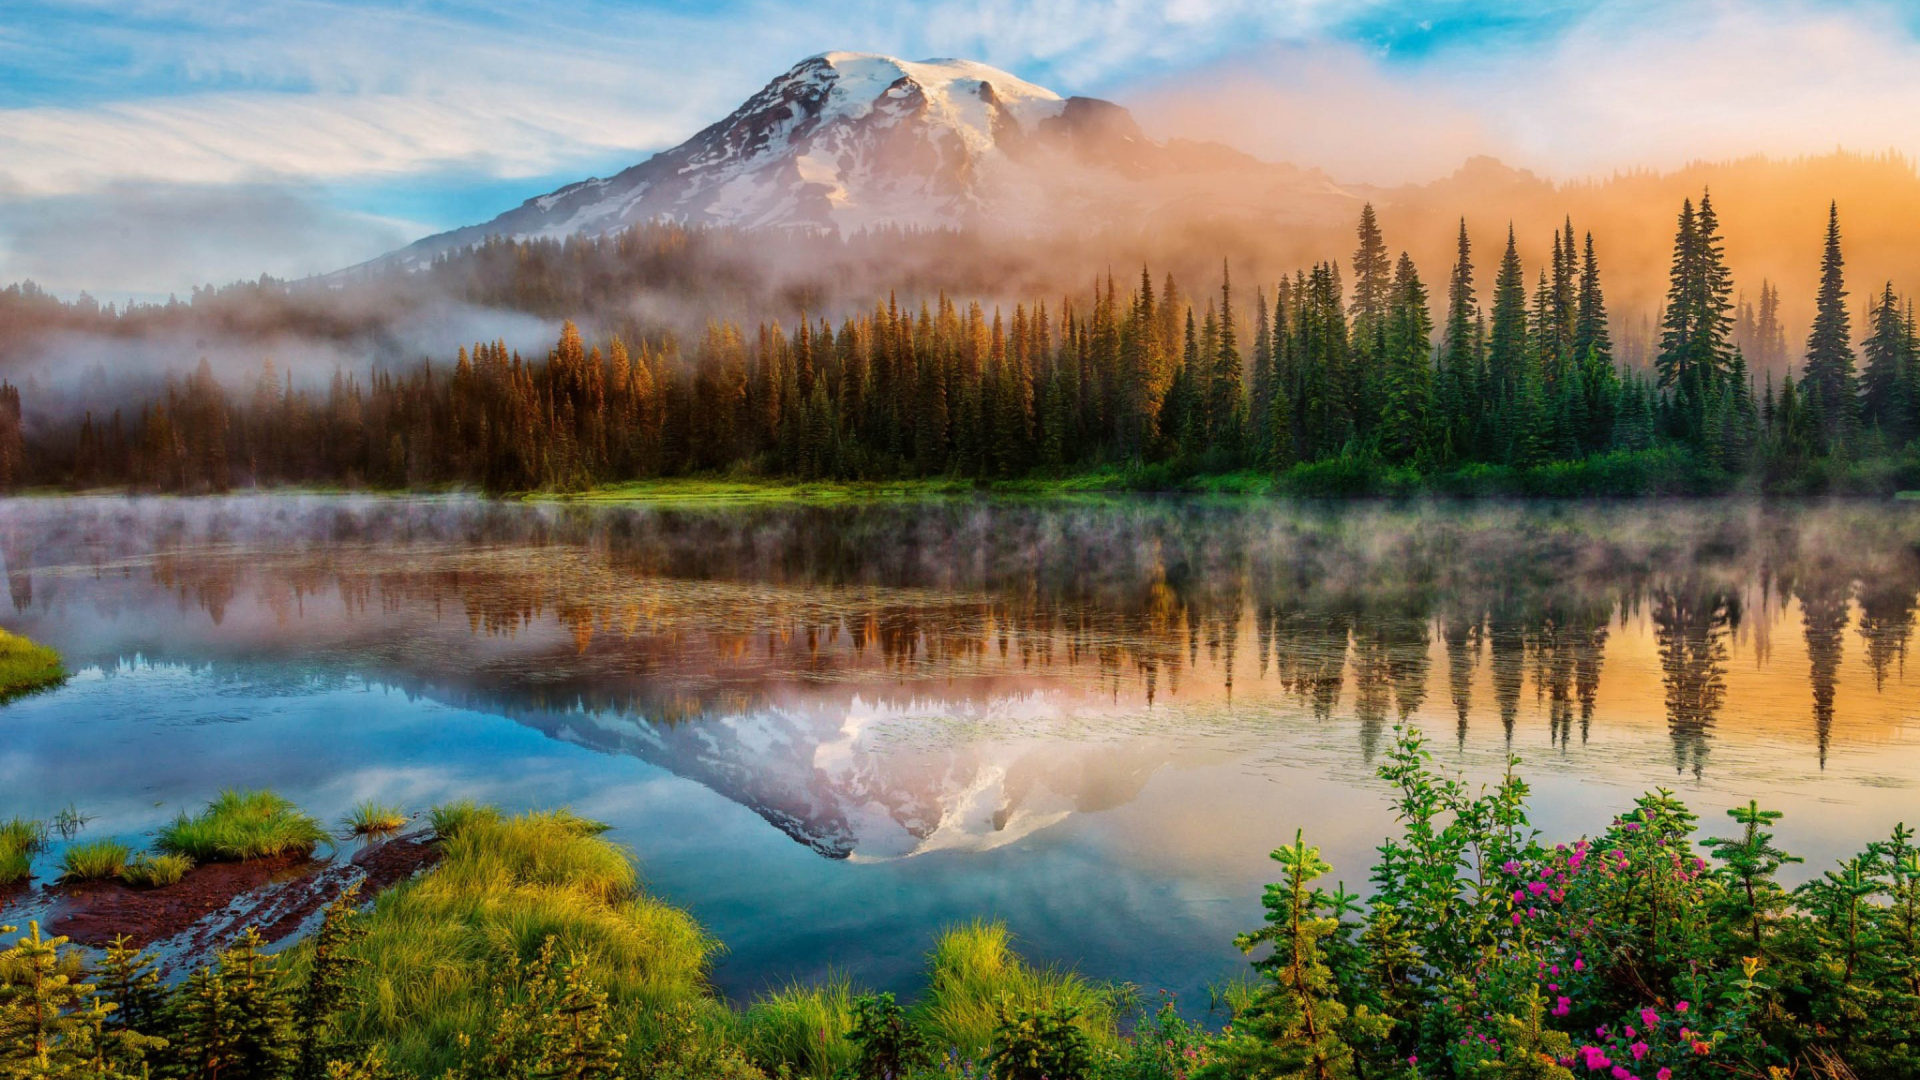 Mount Rainier National Park trails, Desktop wallpaper, HD wide, Scenic beauty, 1920x1080 Full HD Desktop